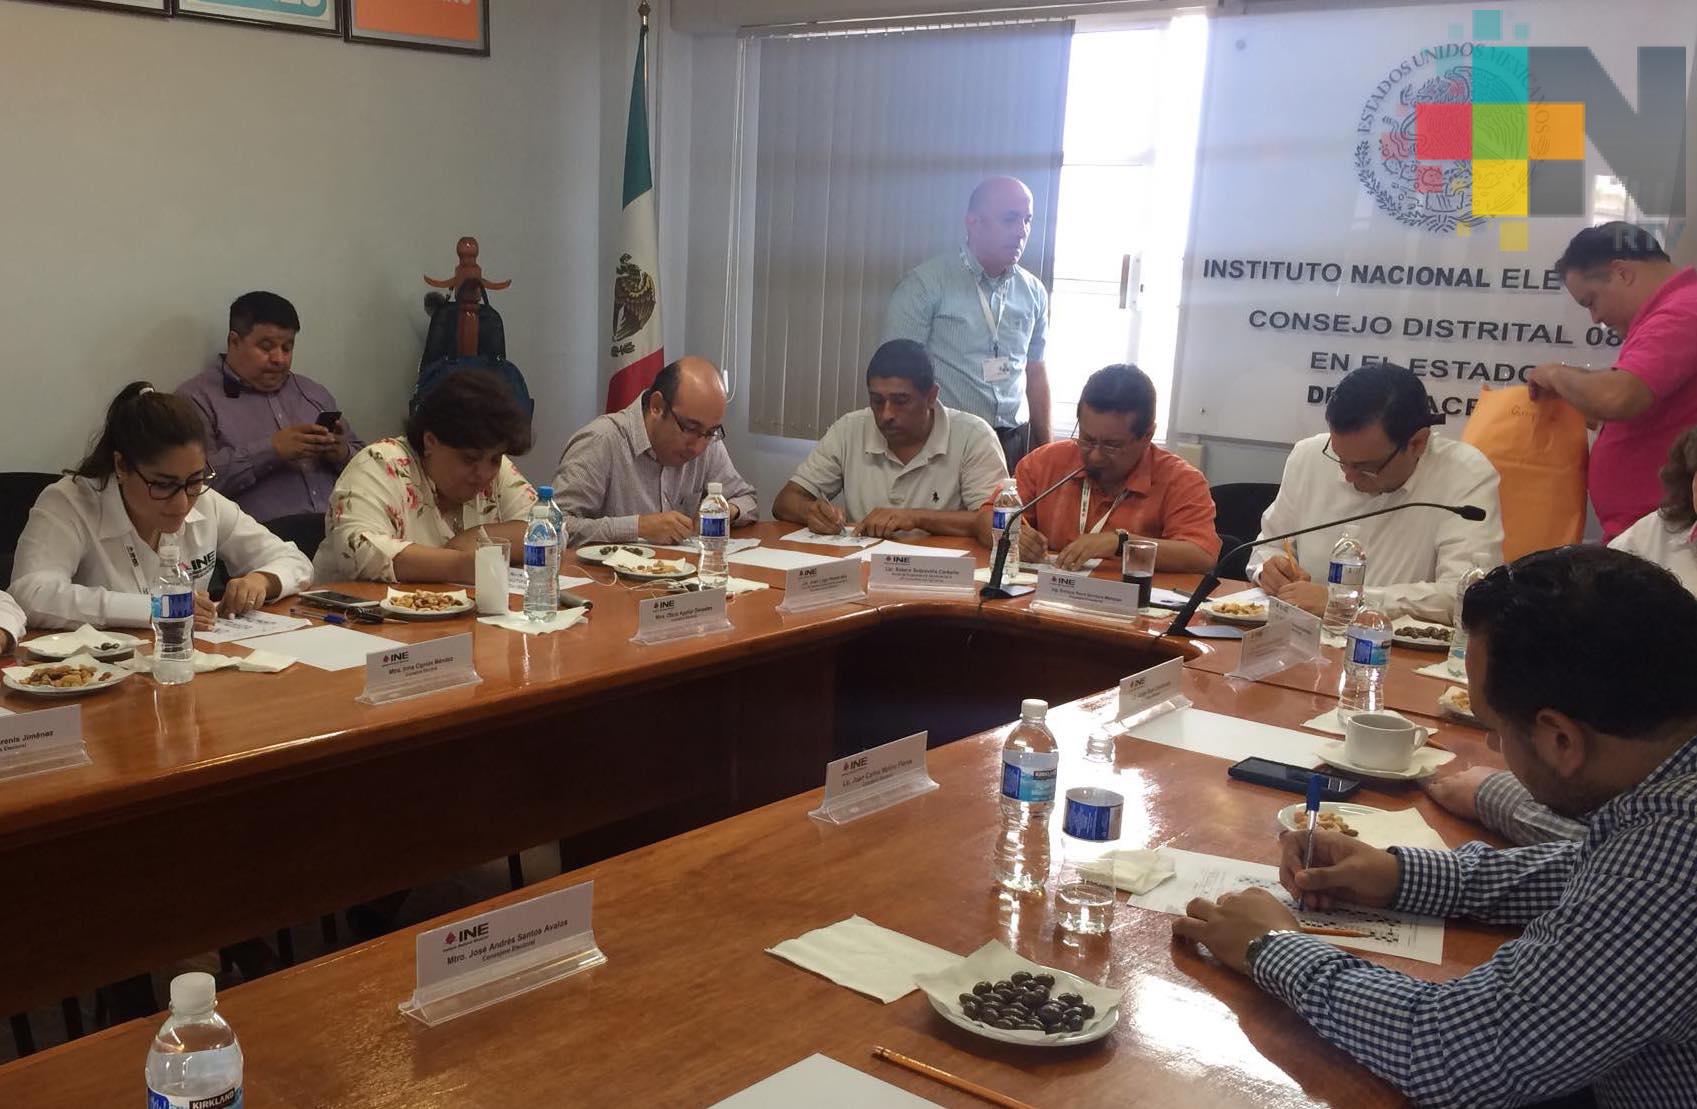 INE evaluó a más de mil aspirantes a capacitadores y supervisores electorales locales en todo el Estado